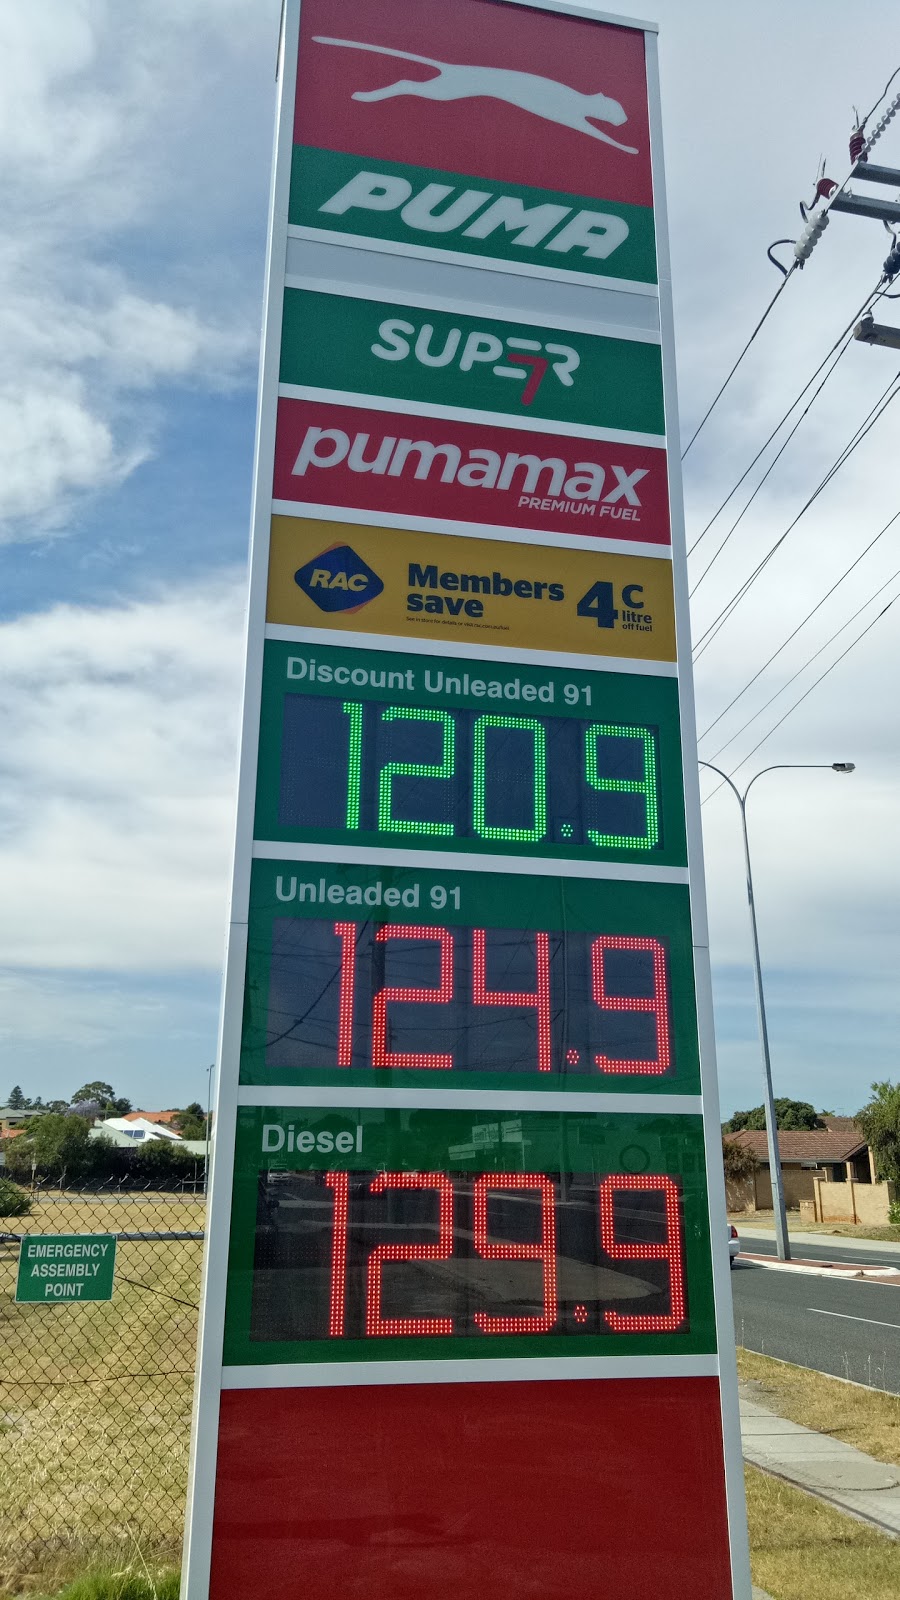 rac fuel discount puma